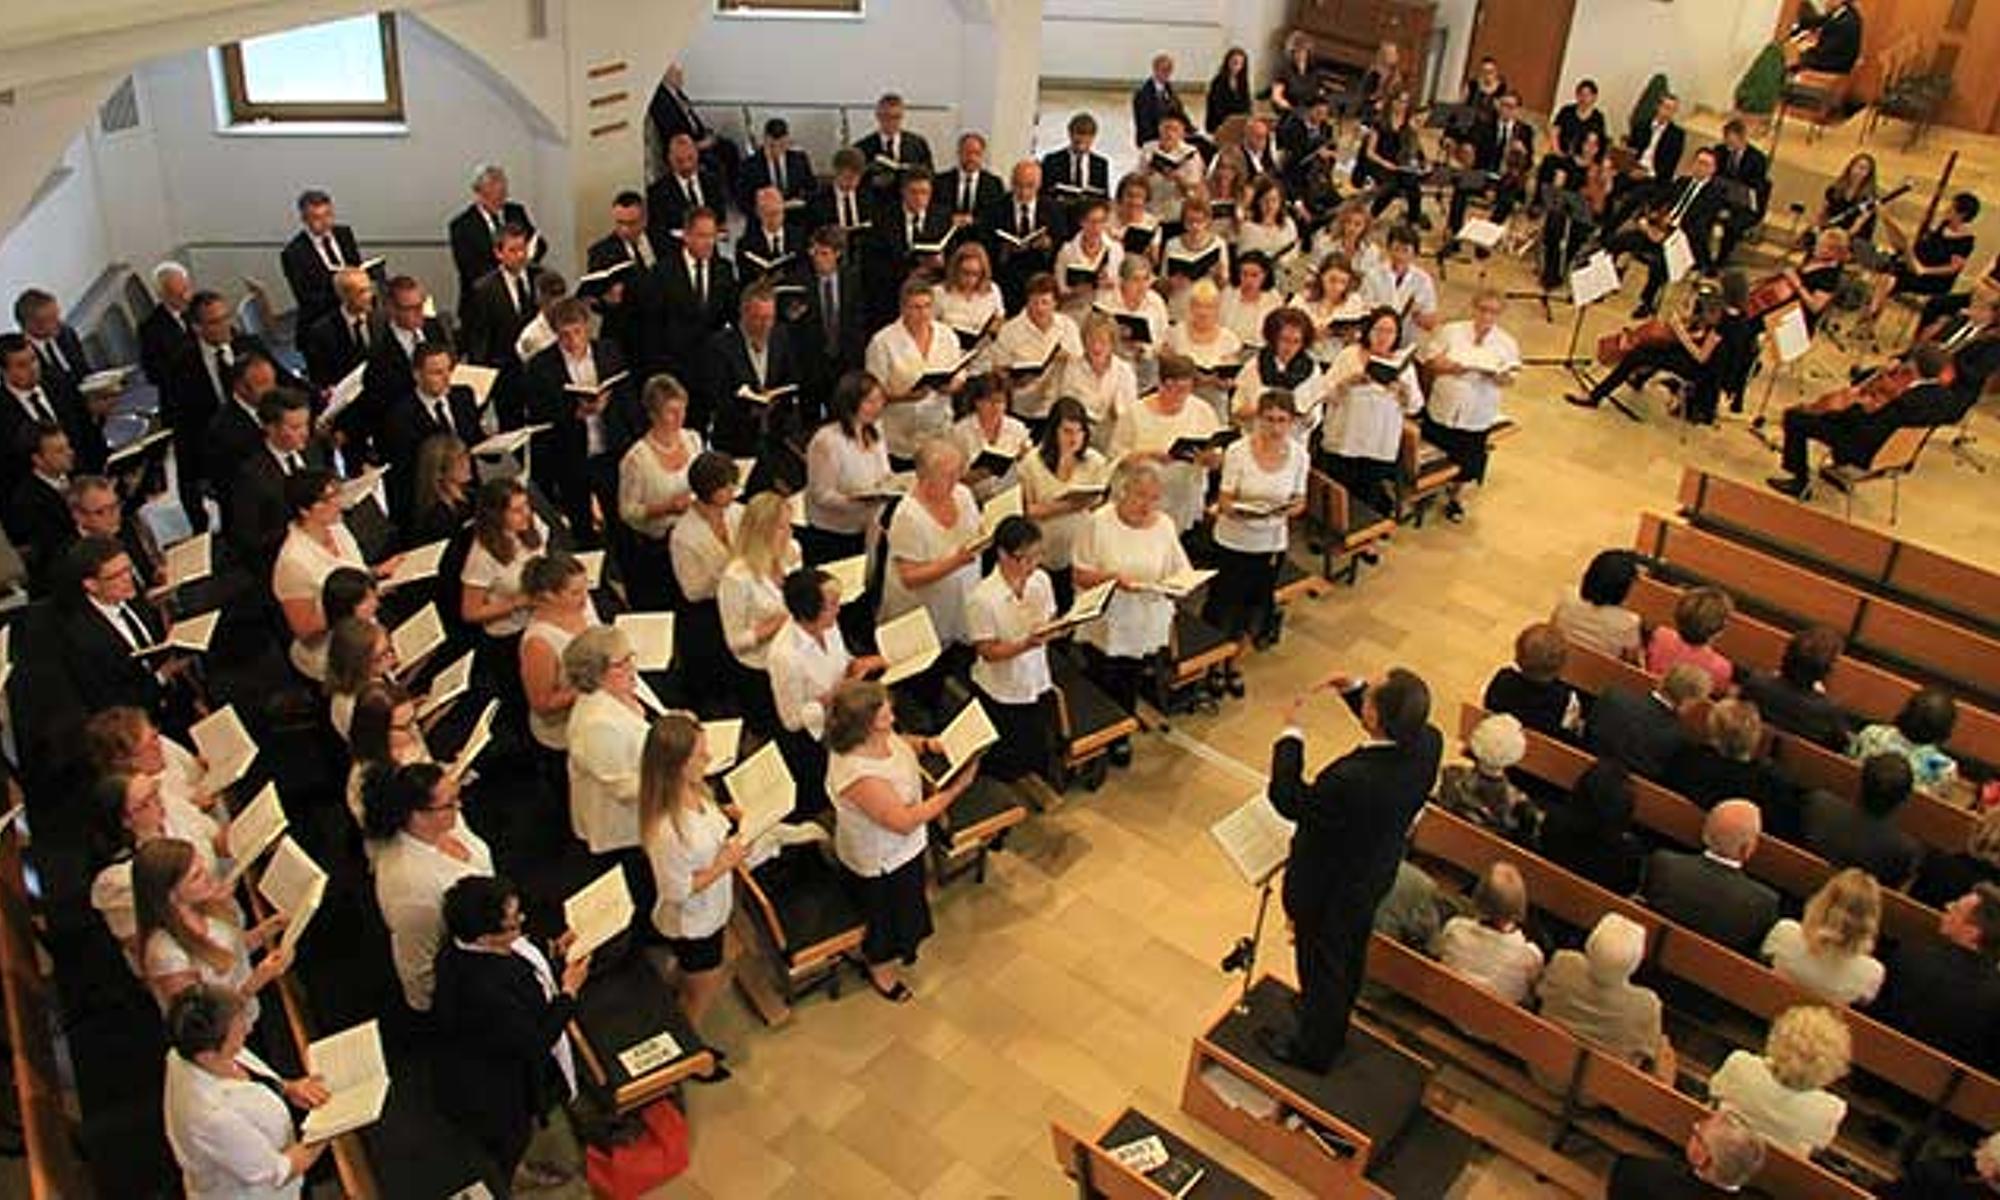 Der gemischte Chor und ein Orchester umrahmten den Gottesdienst musikalisch